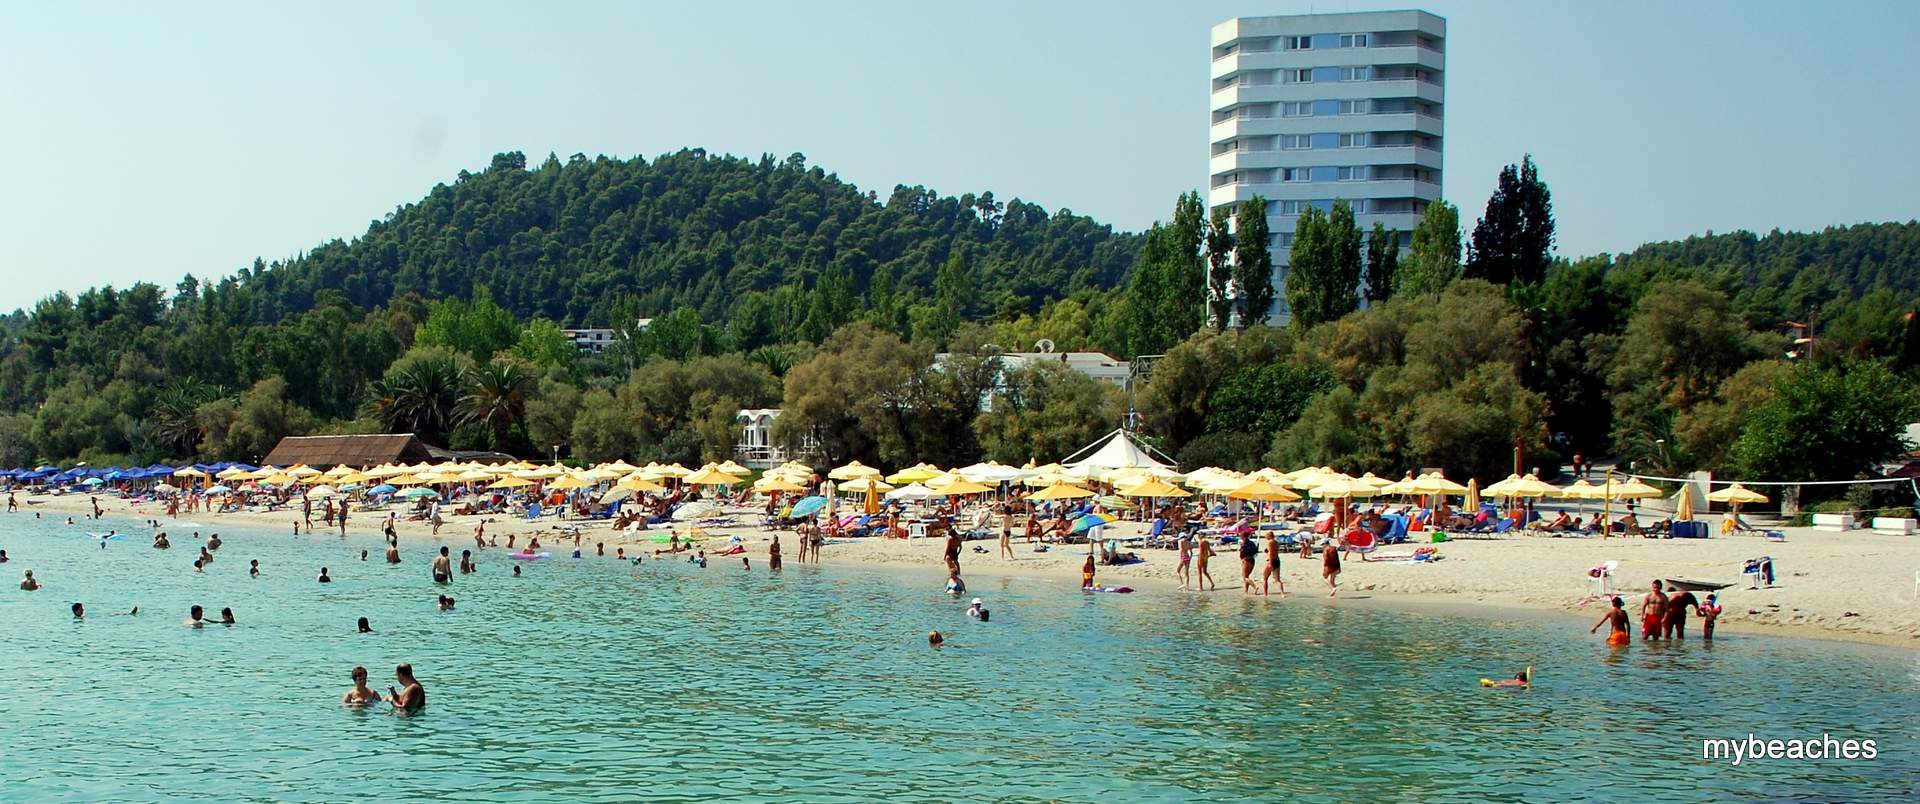 Παλλήνη παραλία, Κασσάνδρα, Χαλκιδική, Ελλάδα